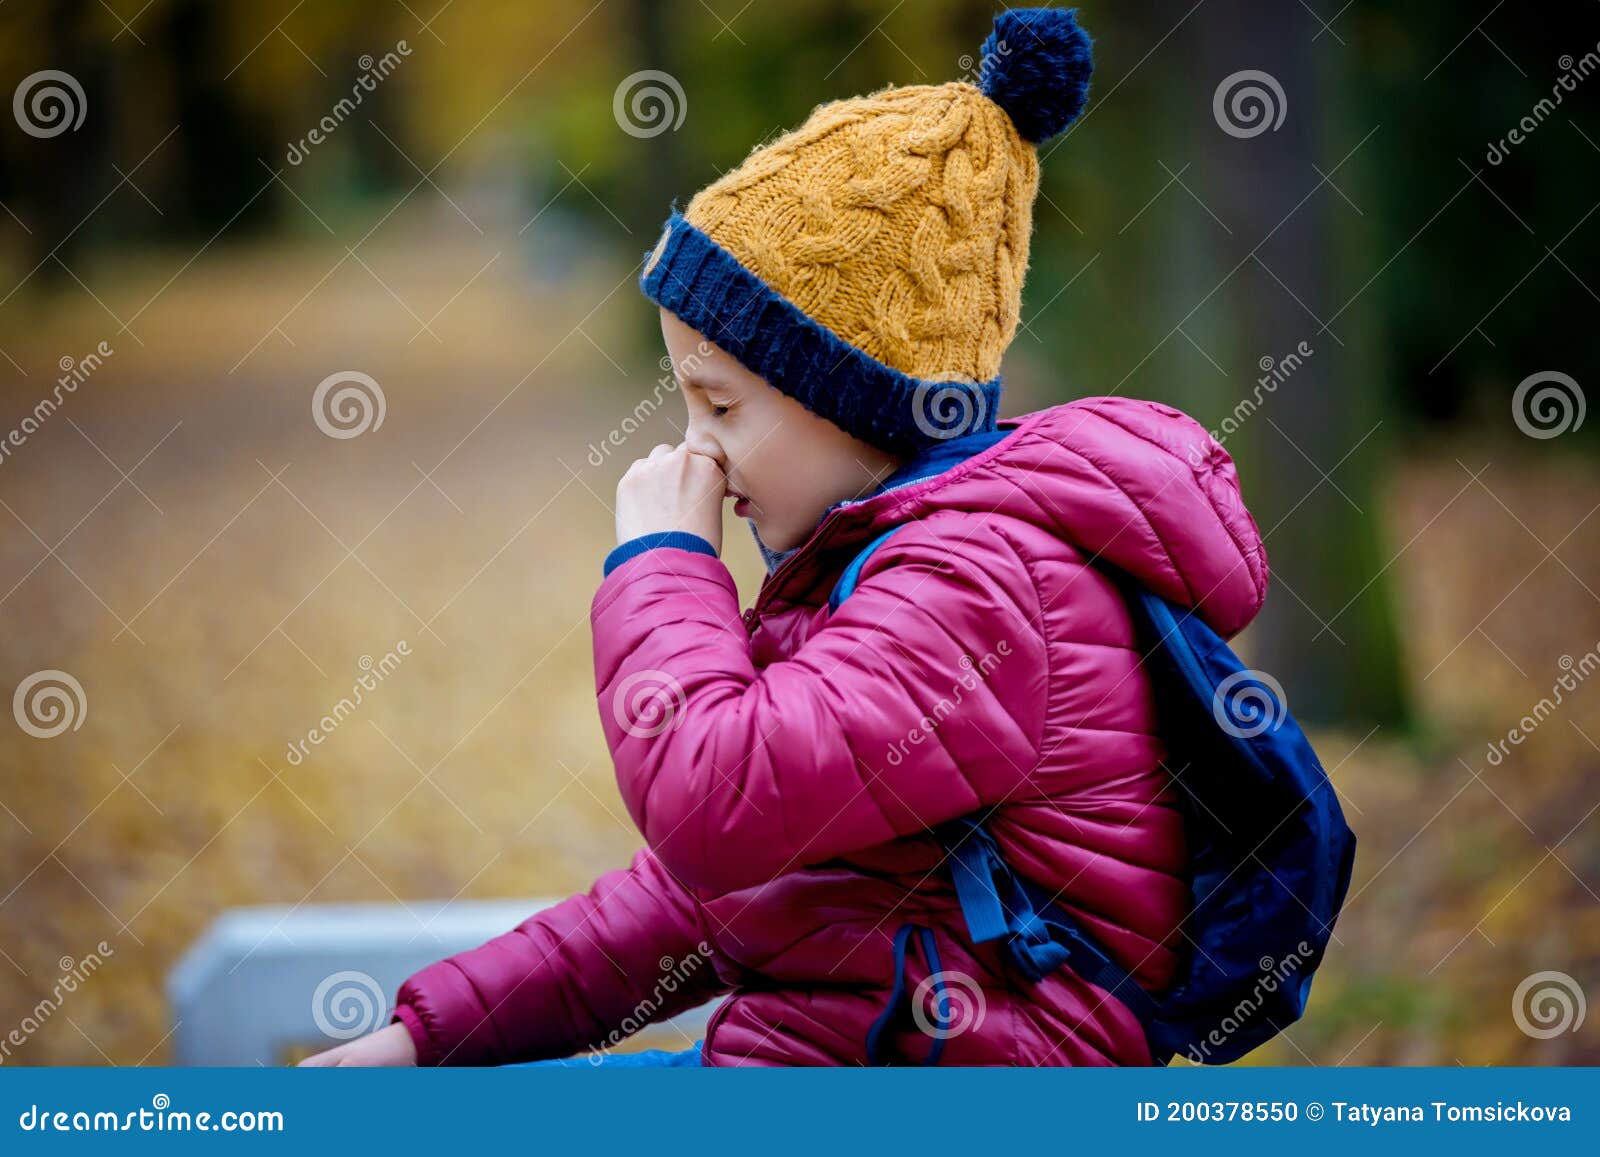 preschool child, boy, sneezing in park, flu season